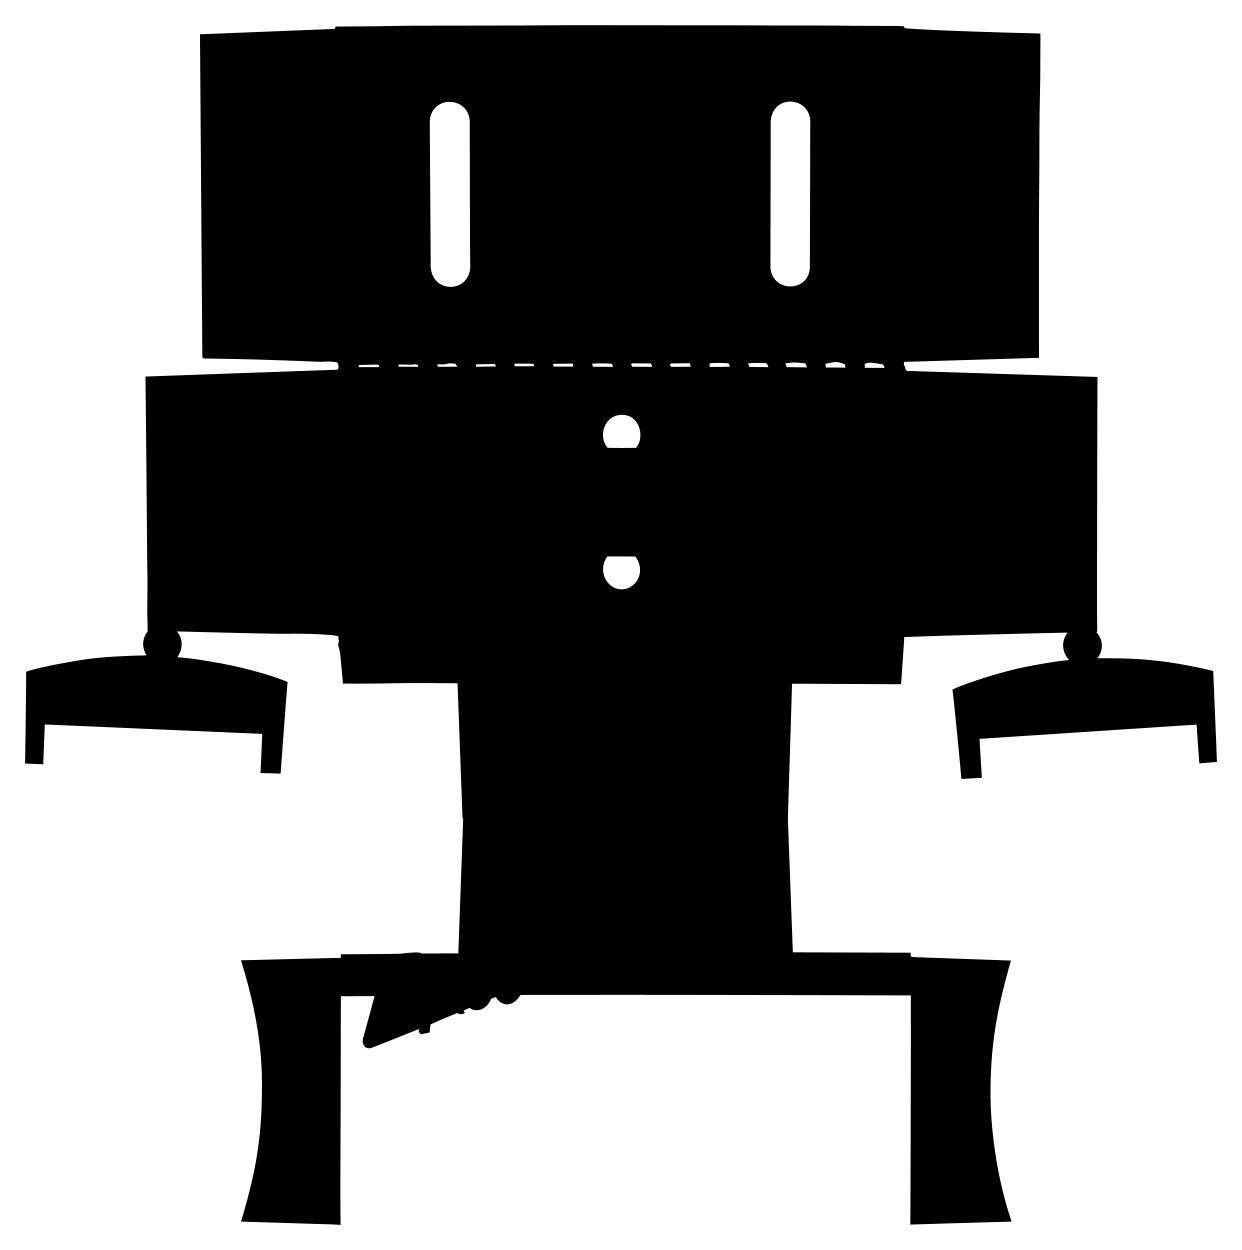 Ziploc (48 Pack) BoxBot silhouette